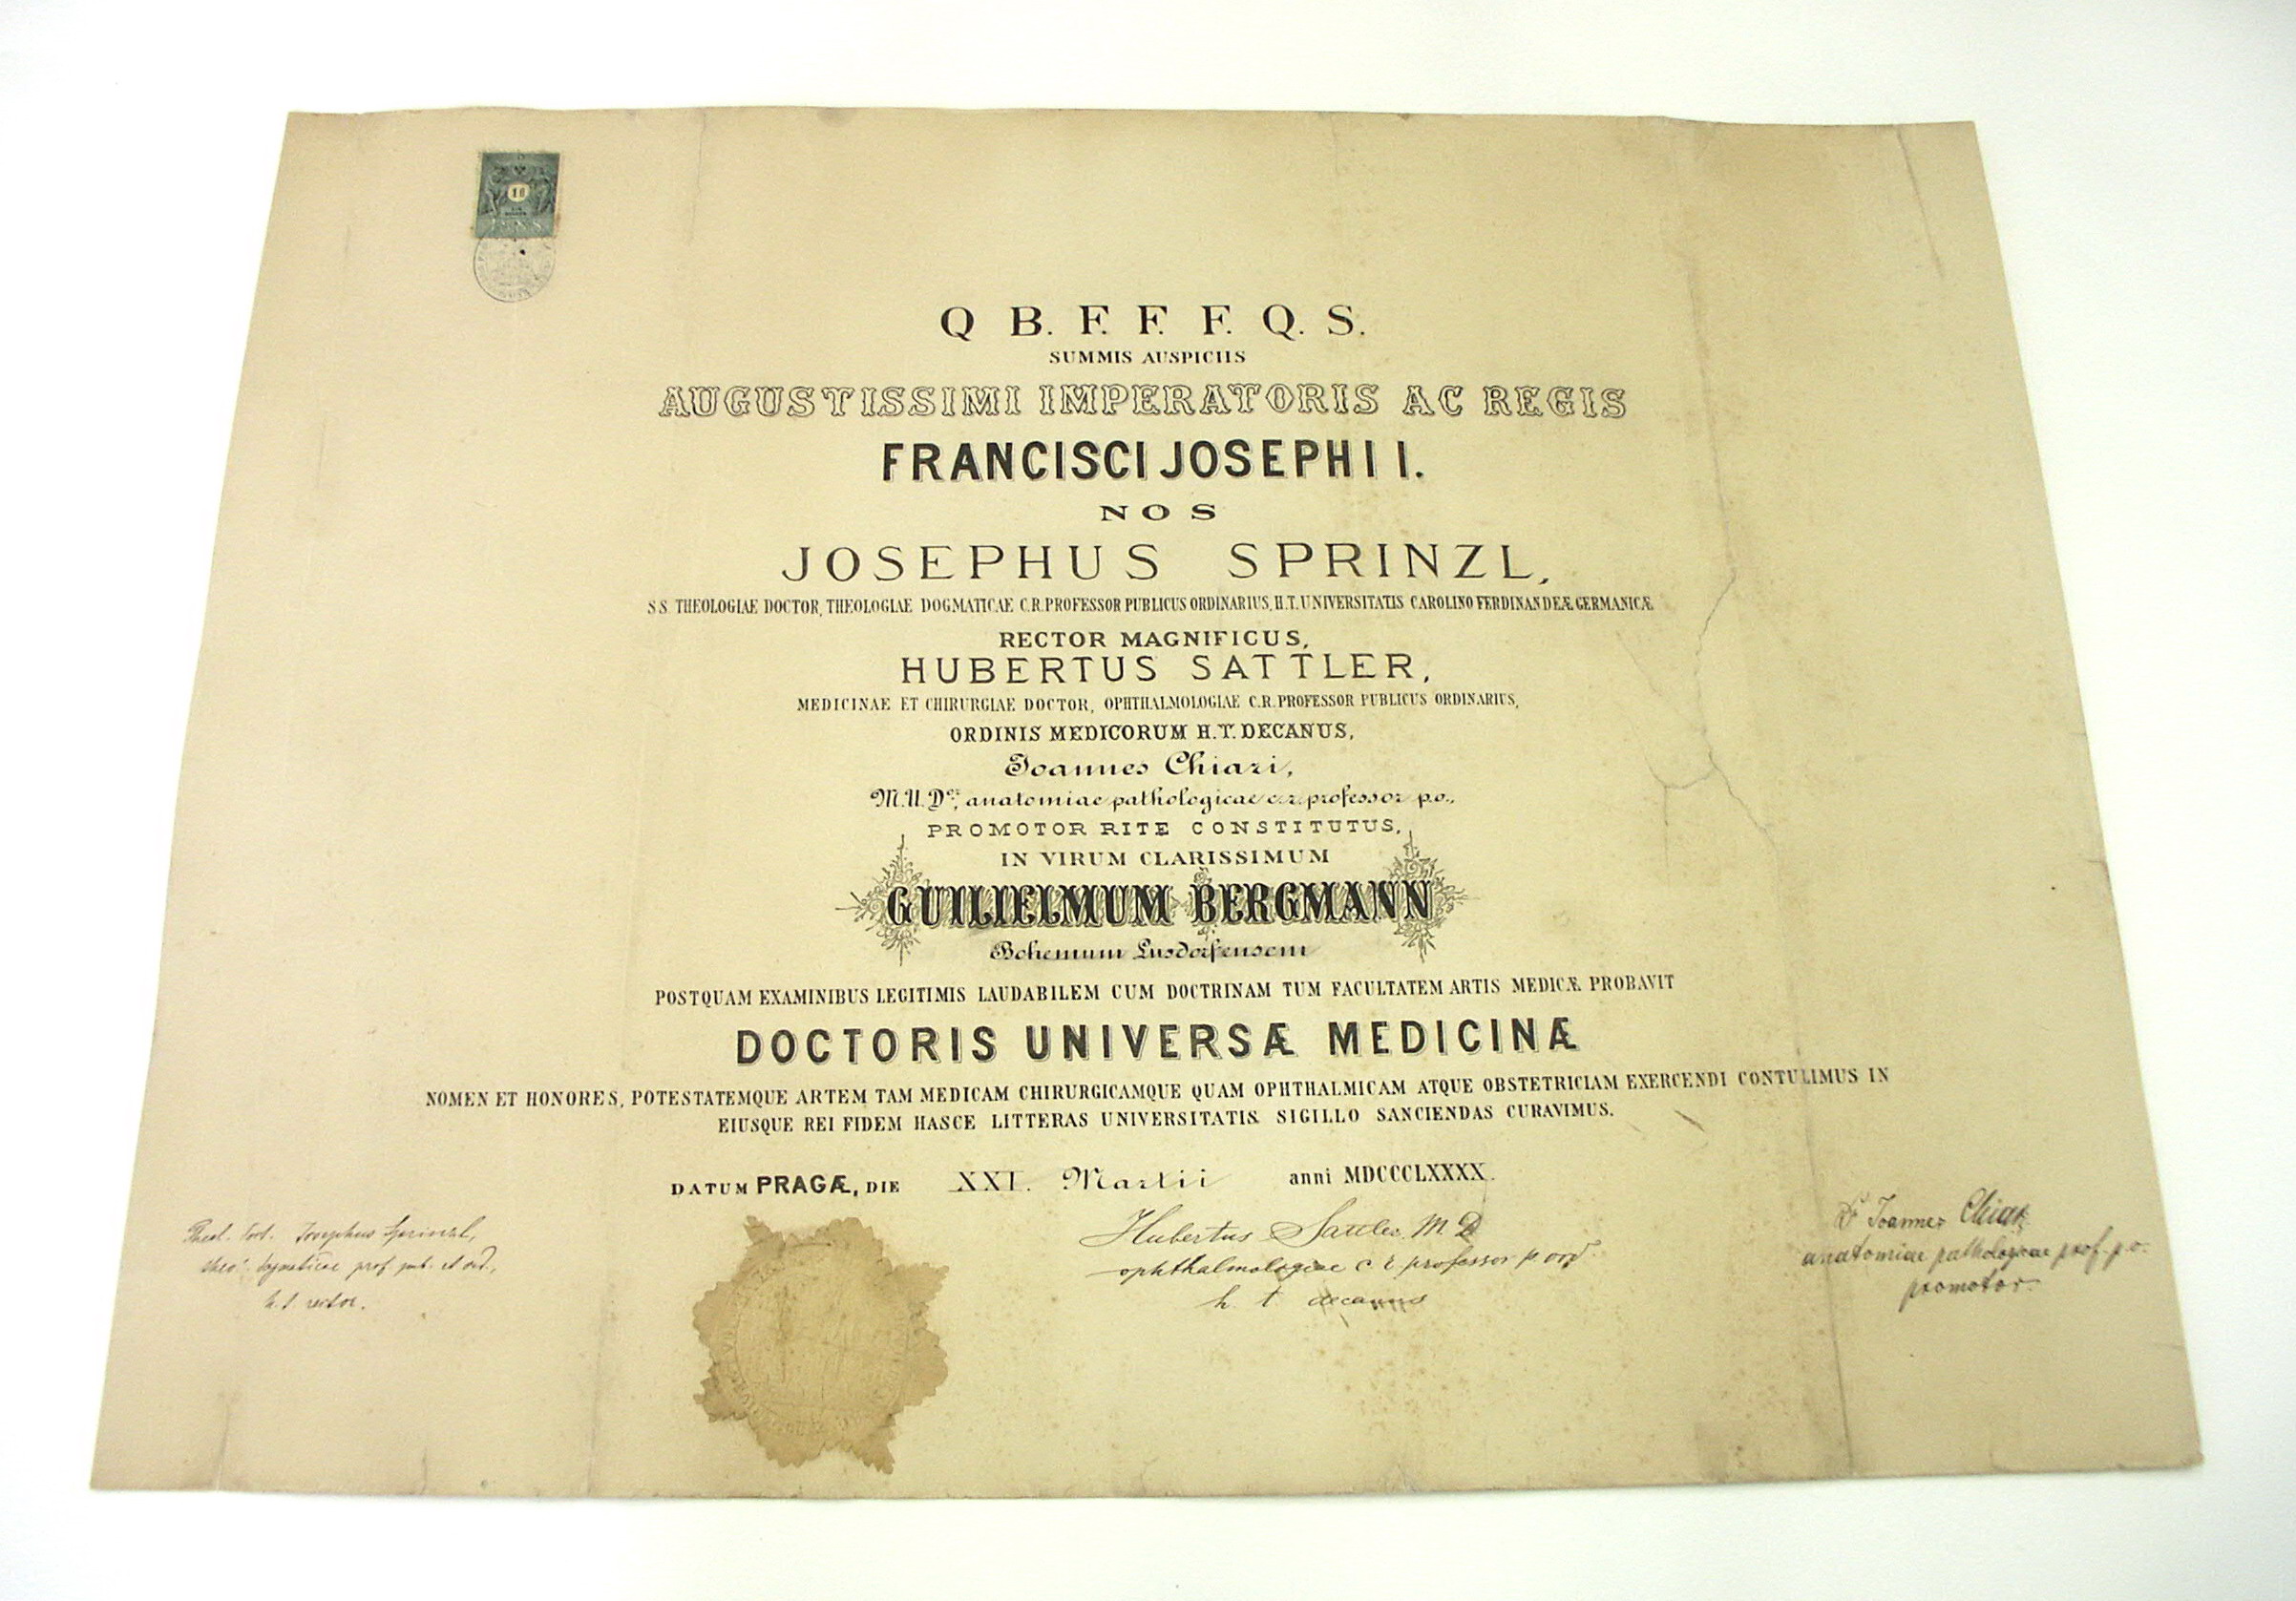 Diplom z pražské univerzity roku 1890